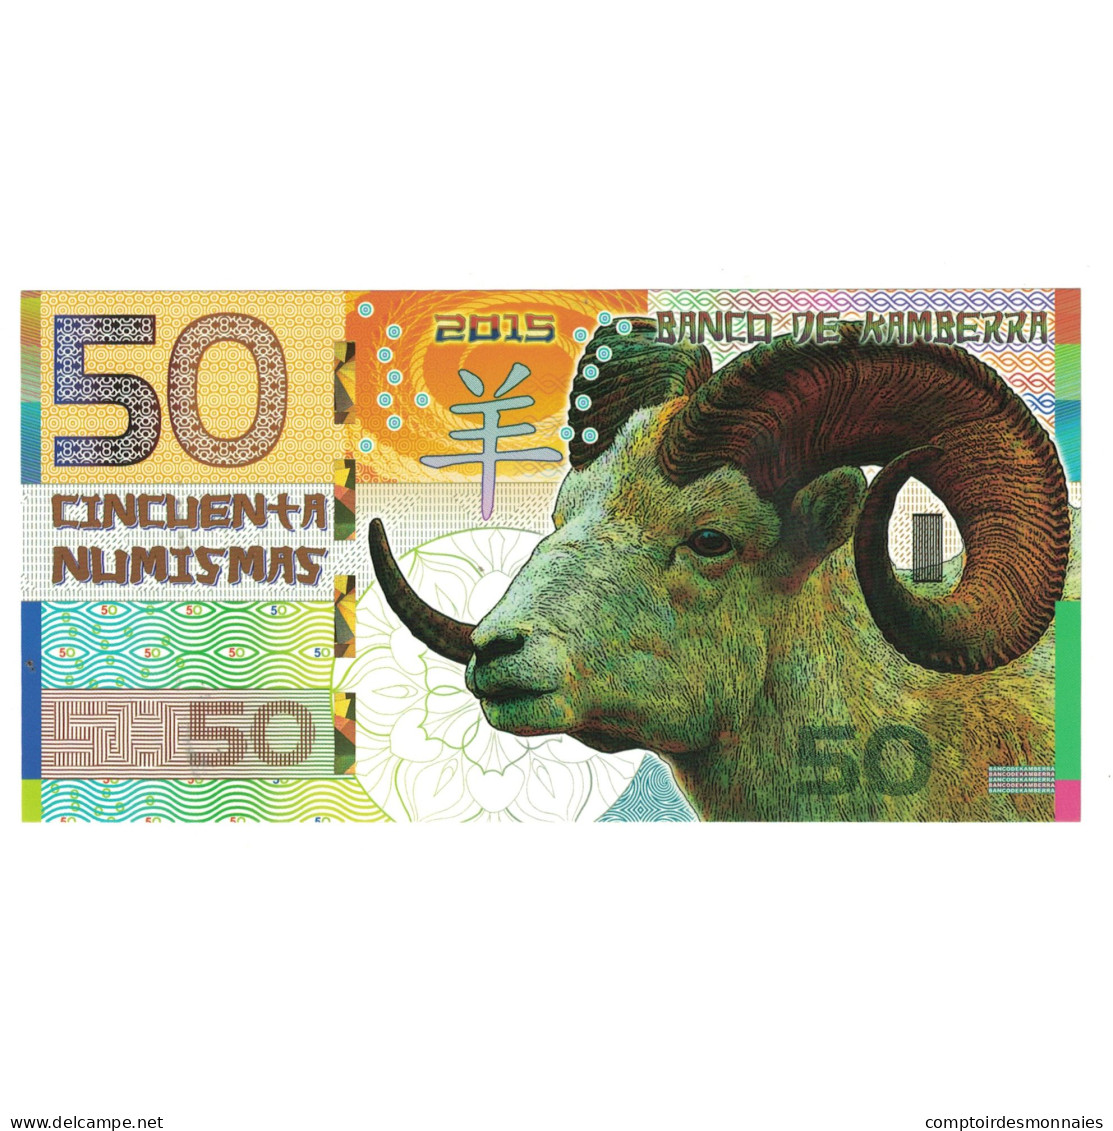 Billet, Australie, Billet Touristique, 2015, 50 Dollars ,Colorful Plastic - Finti & Campioni